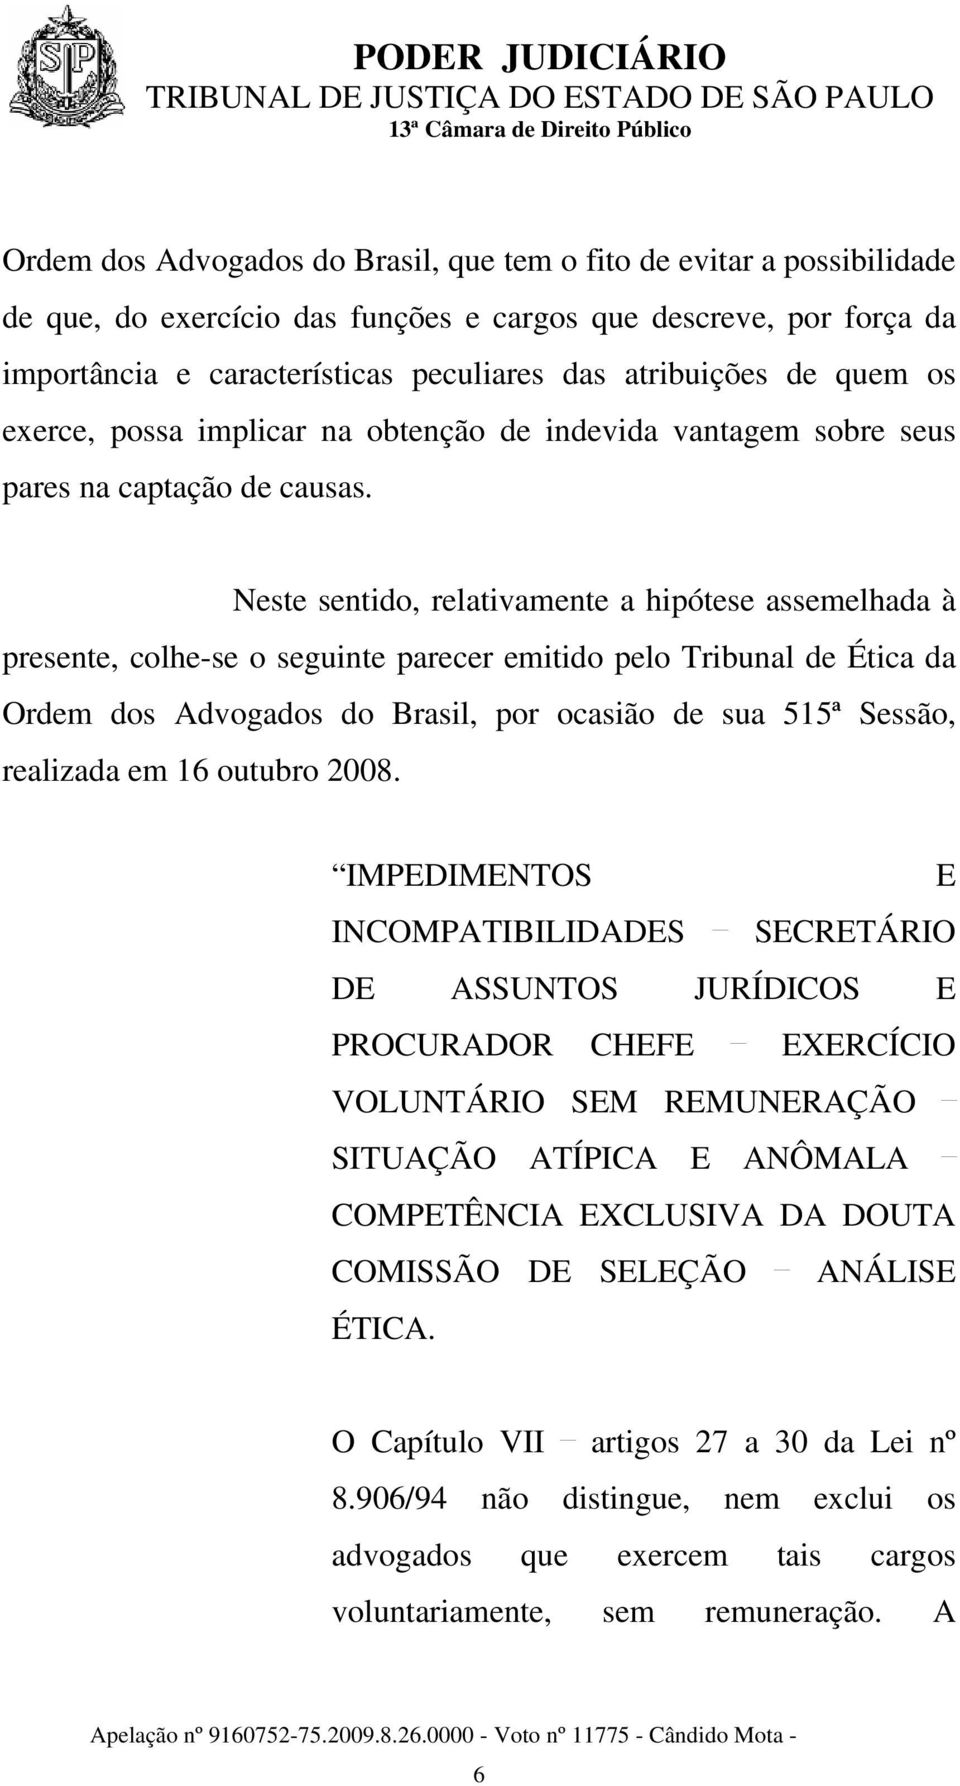 Neste sentido, relativamente a hipótese assemelhada à presente, colhe-se o seguinte parecer emitido pelo Tribunal de Ética da Ordem dos Advogados do Brasil, por ocasião de sua 515ª Sessão, realizada